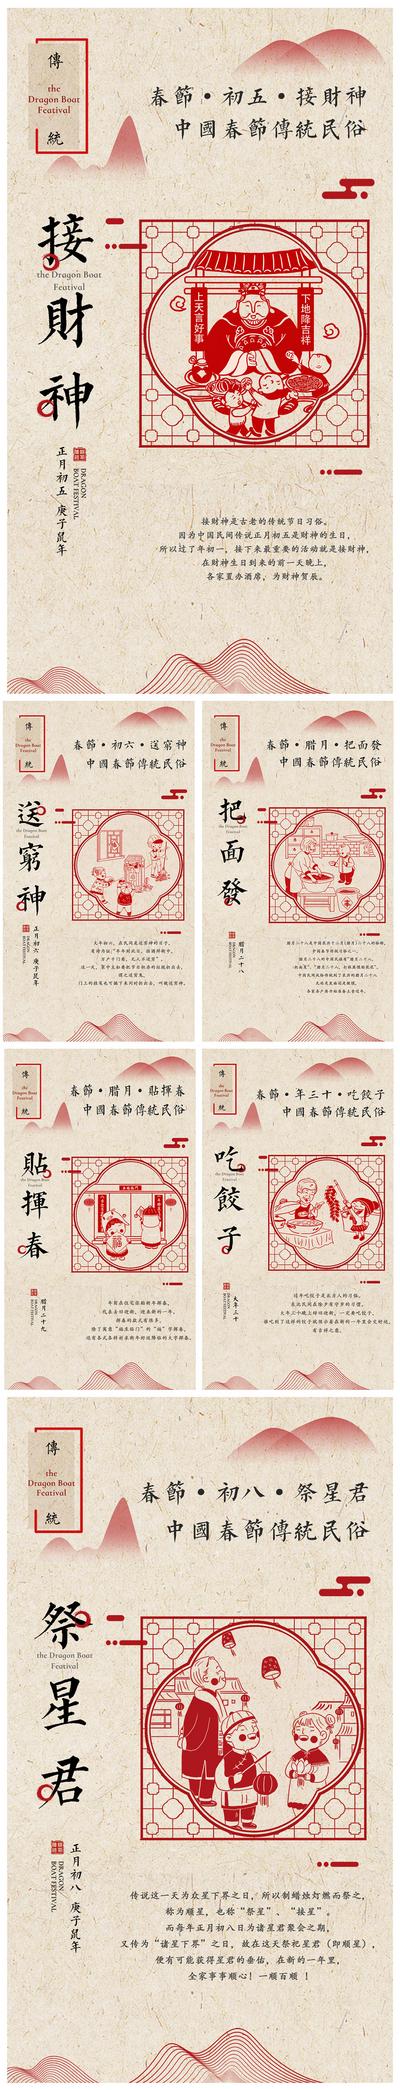 南门网 海报 春节 过年 新年 中国传统节日 风俗 习俗 日程 剪纸 创意 中国风 财神